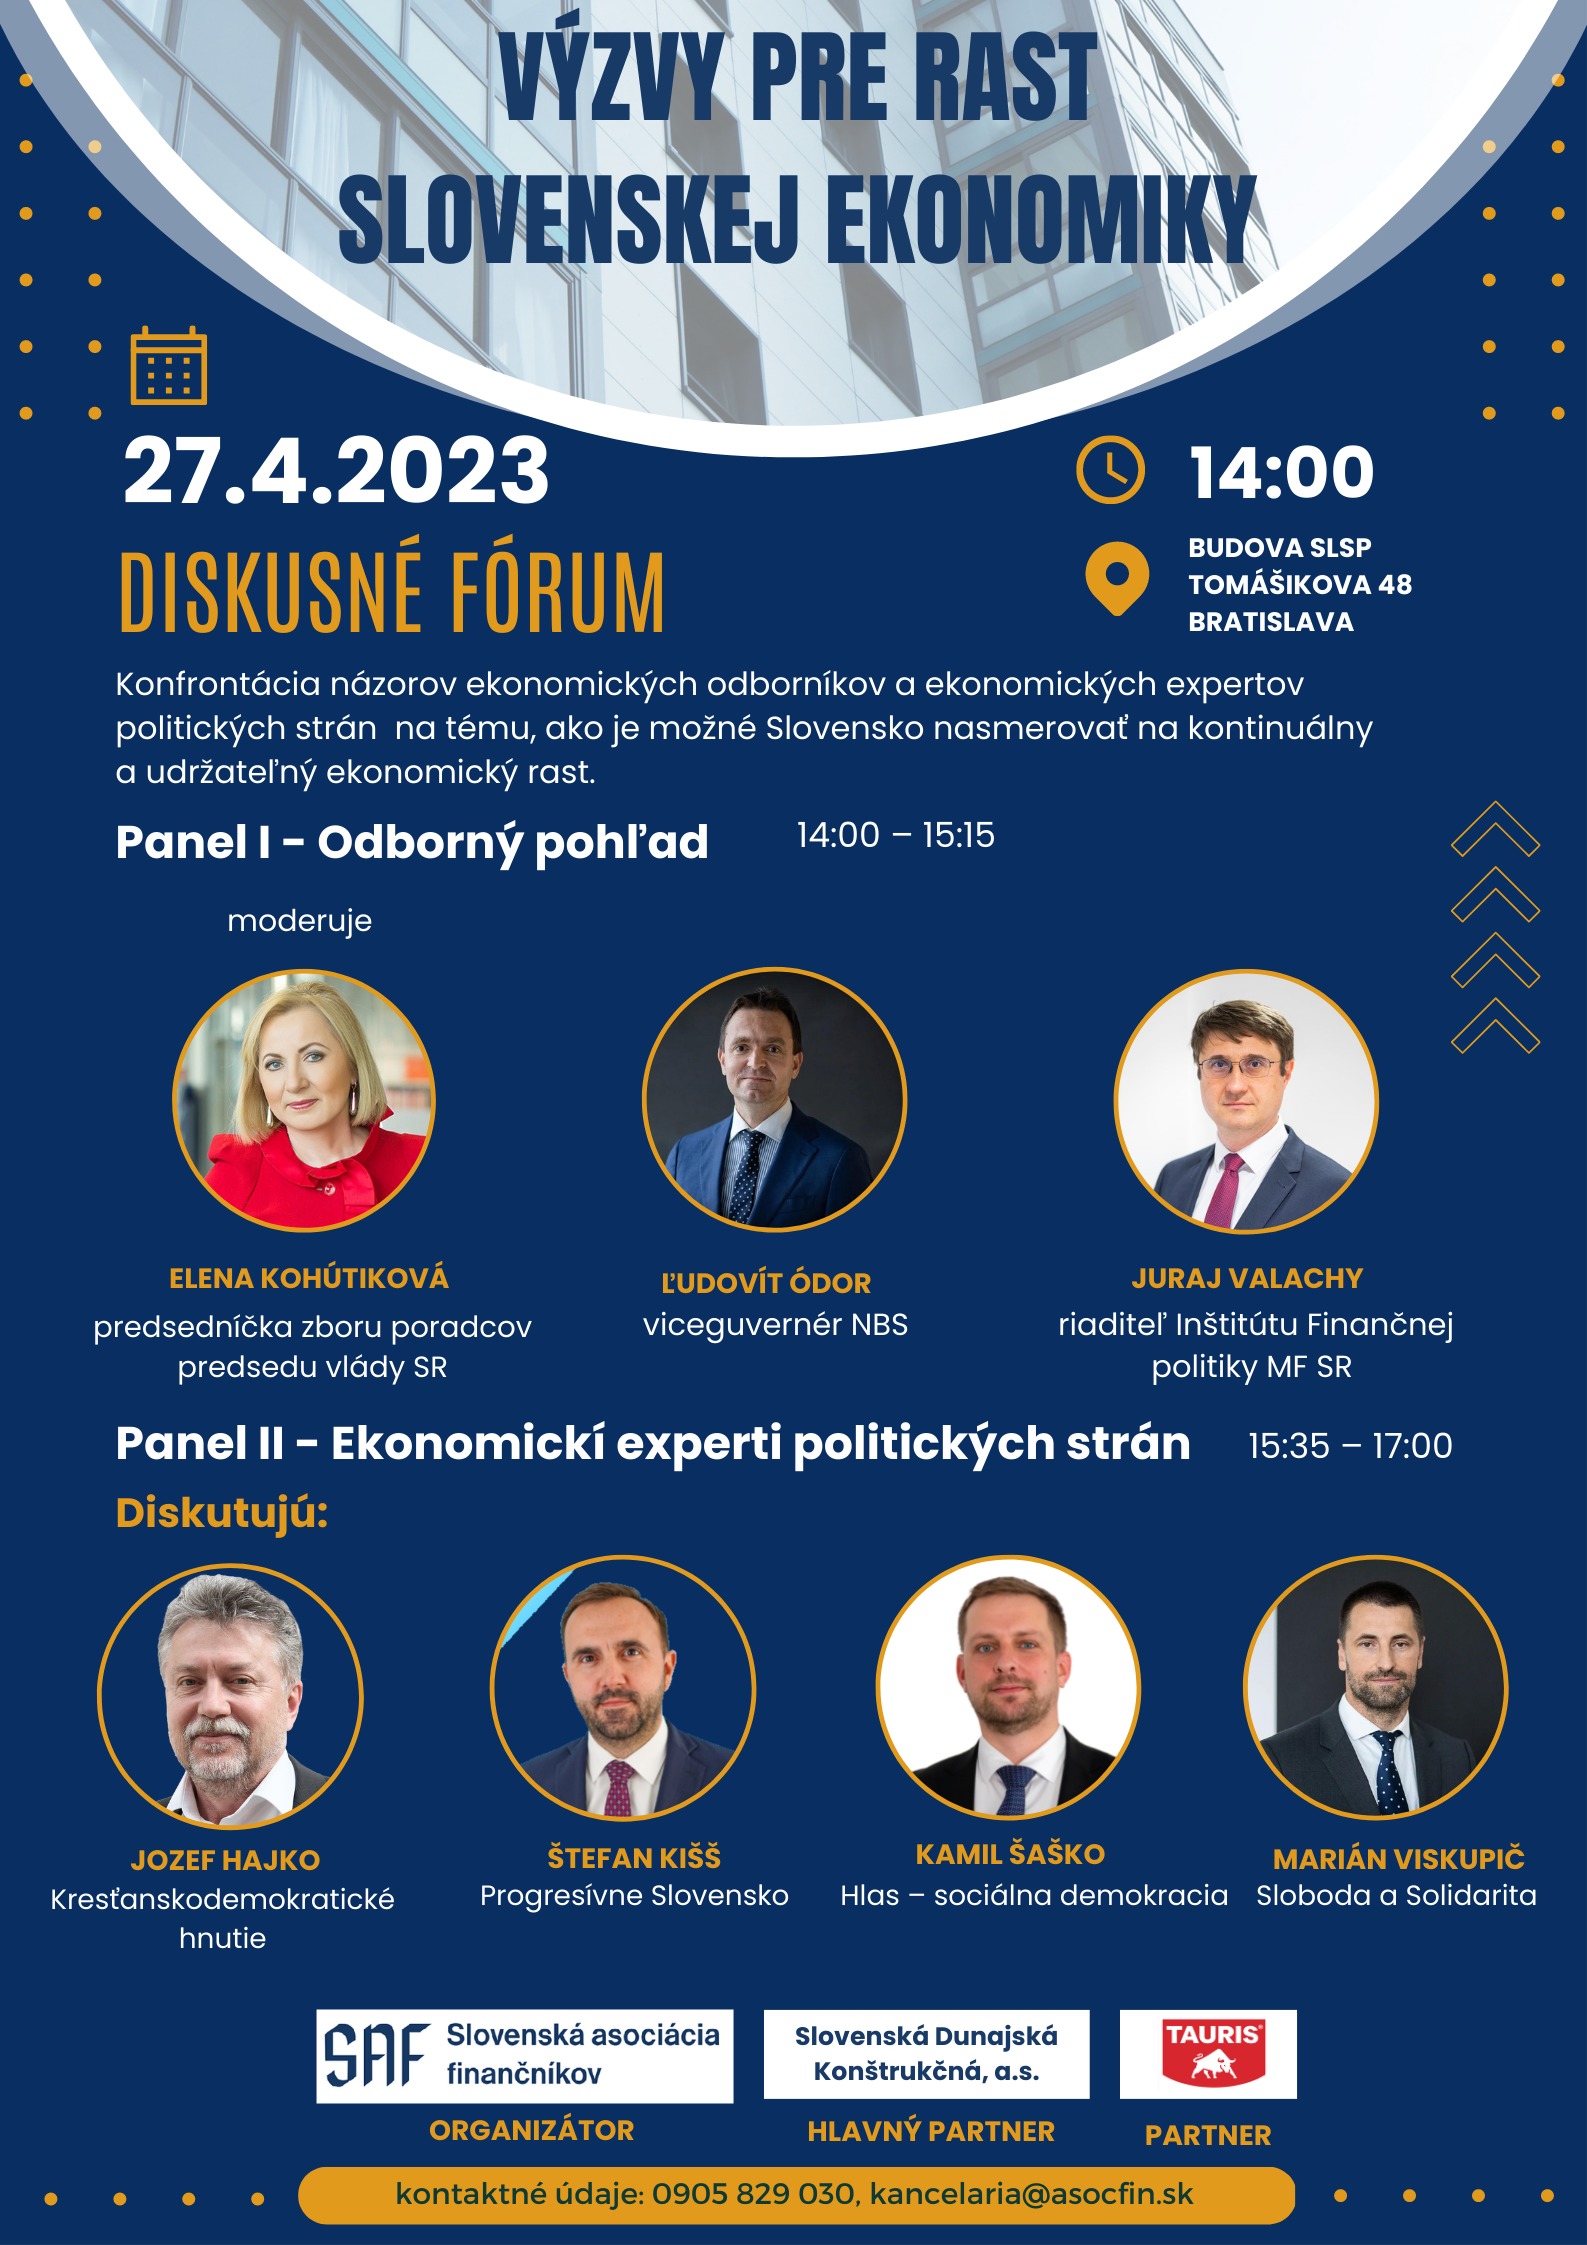 Videozáznam a prezentácie diskusné fórum – Výzvy pre rast slovenskej ekonomiky.